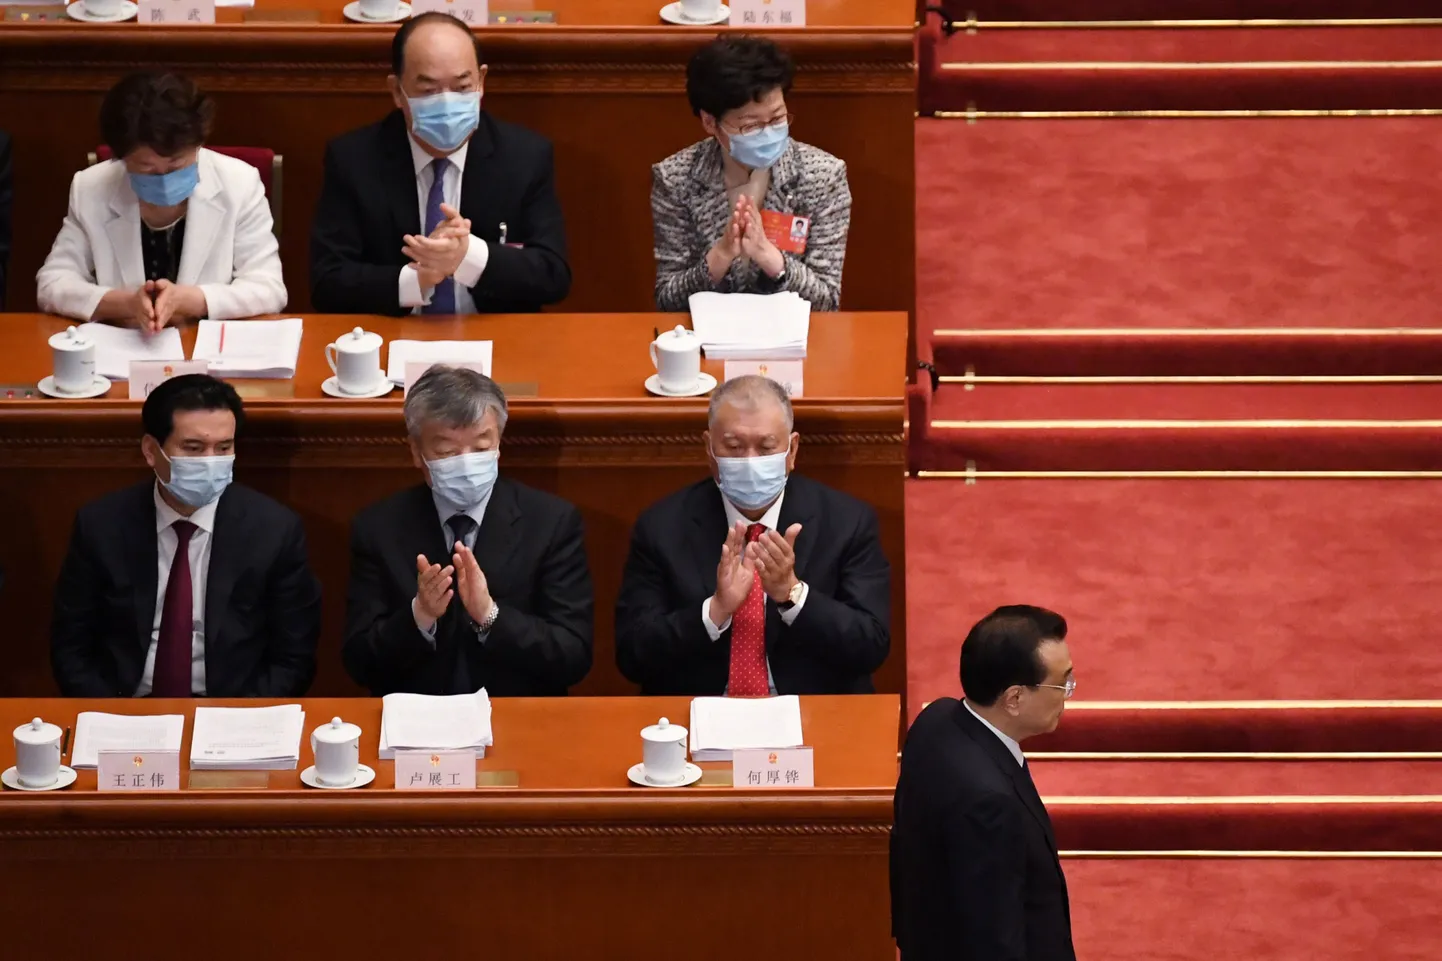 Hiina peaminister Li Keqiang naaseb oma kohal pärast parlamendi ees esinemist.